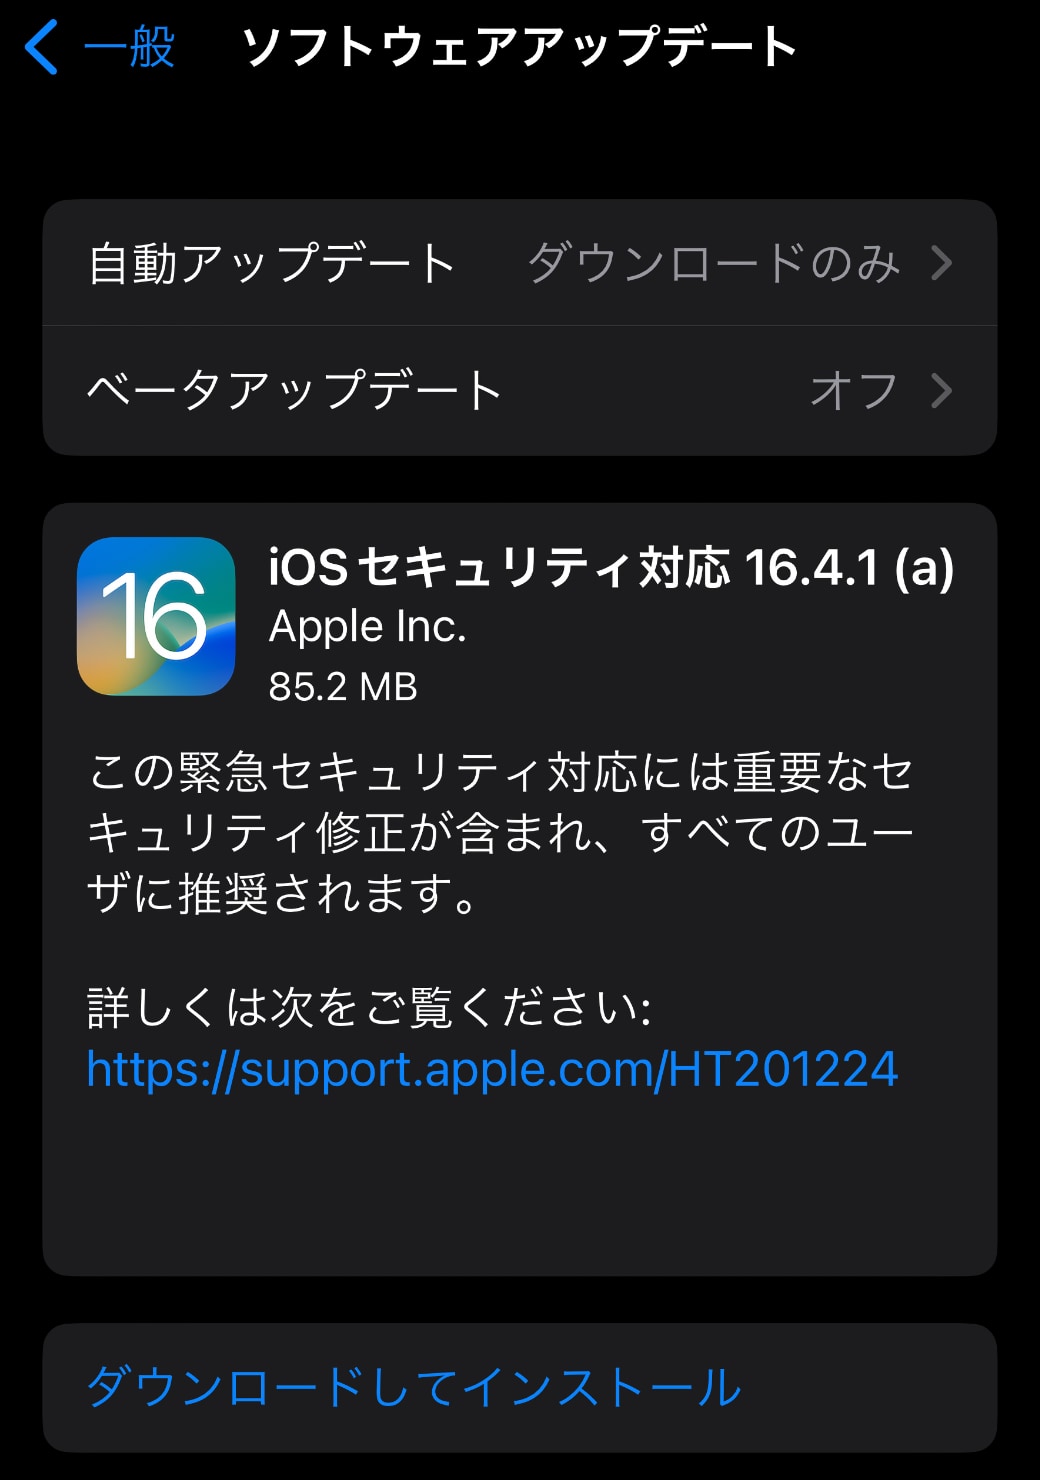 iOSセキュリティ対応 16.4.1a